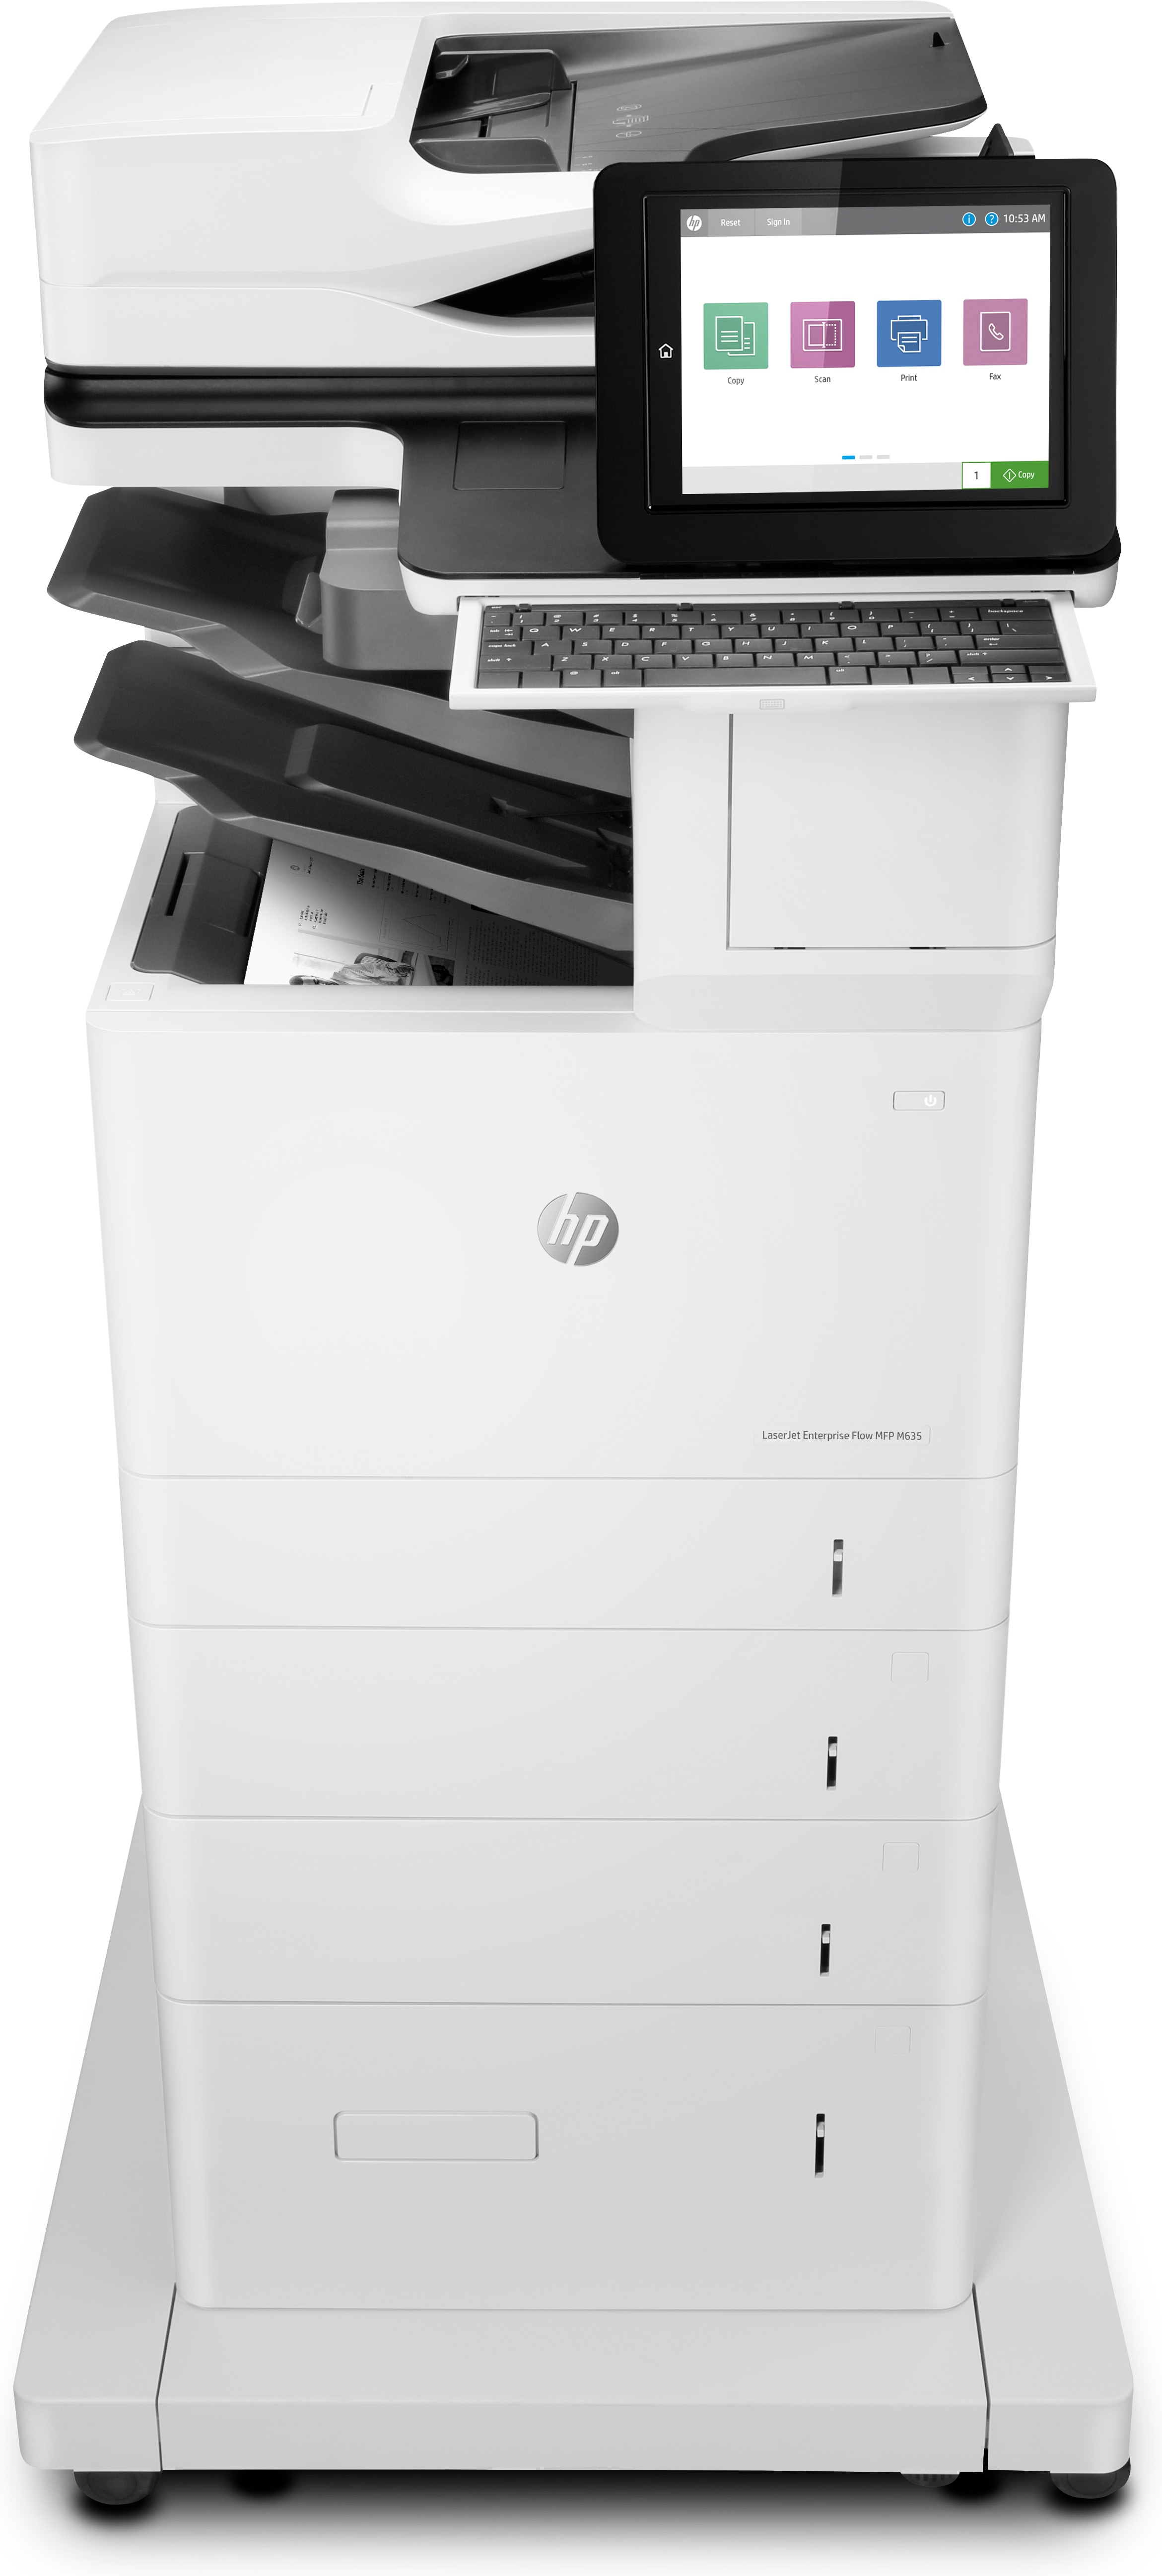 HP LaserJet Enterprise Flow MFP M635z, Skriv ut, kopiera, skanna, fax, Skanna till e-post; Dubbelsidig utskrift; ADF för 150 ark; Energieffektiv; Hög säkerhet